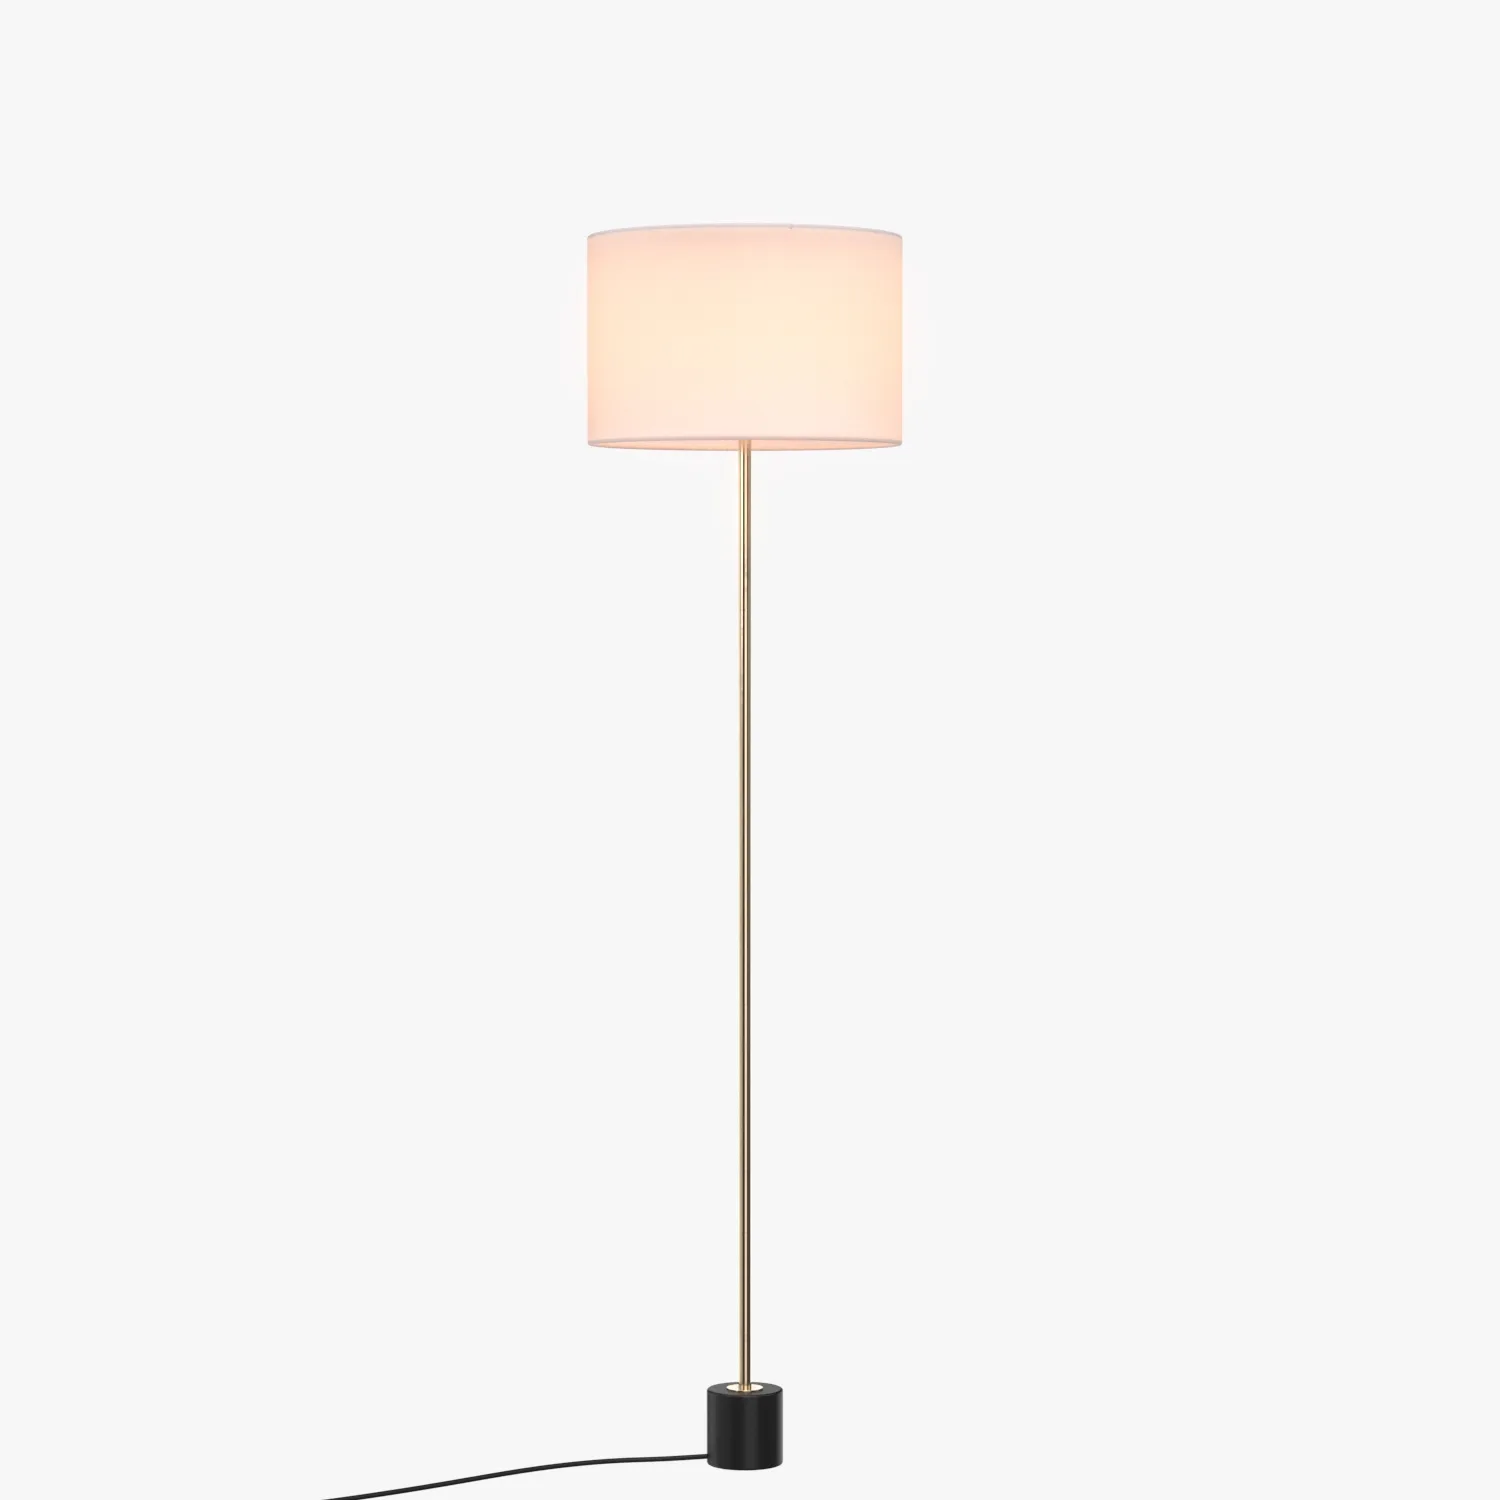 Kilo BL Floor Lamp PBR 3D Model_01